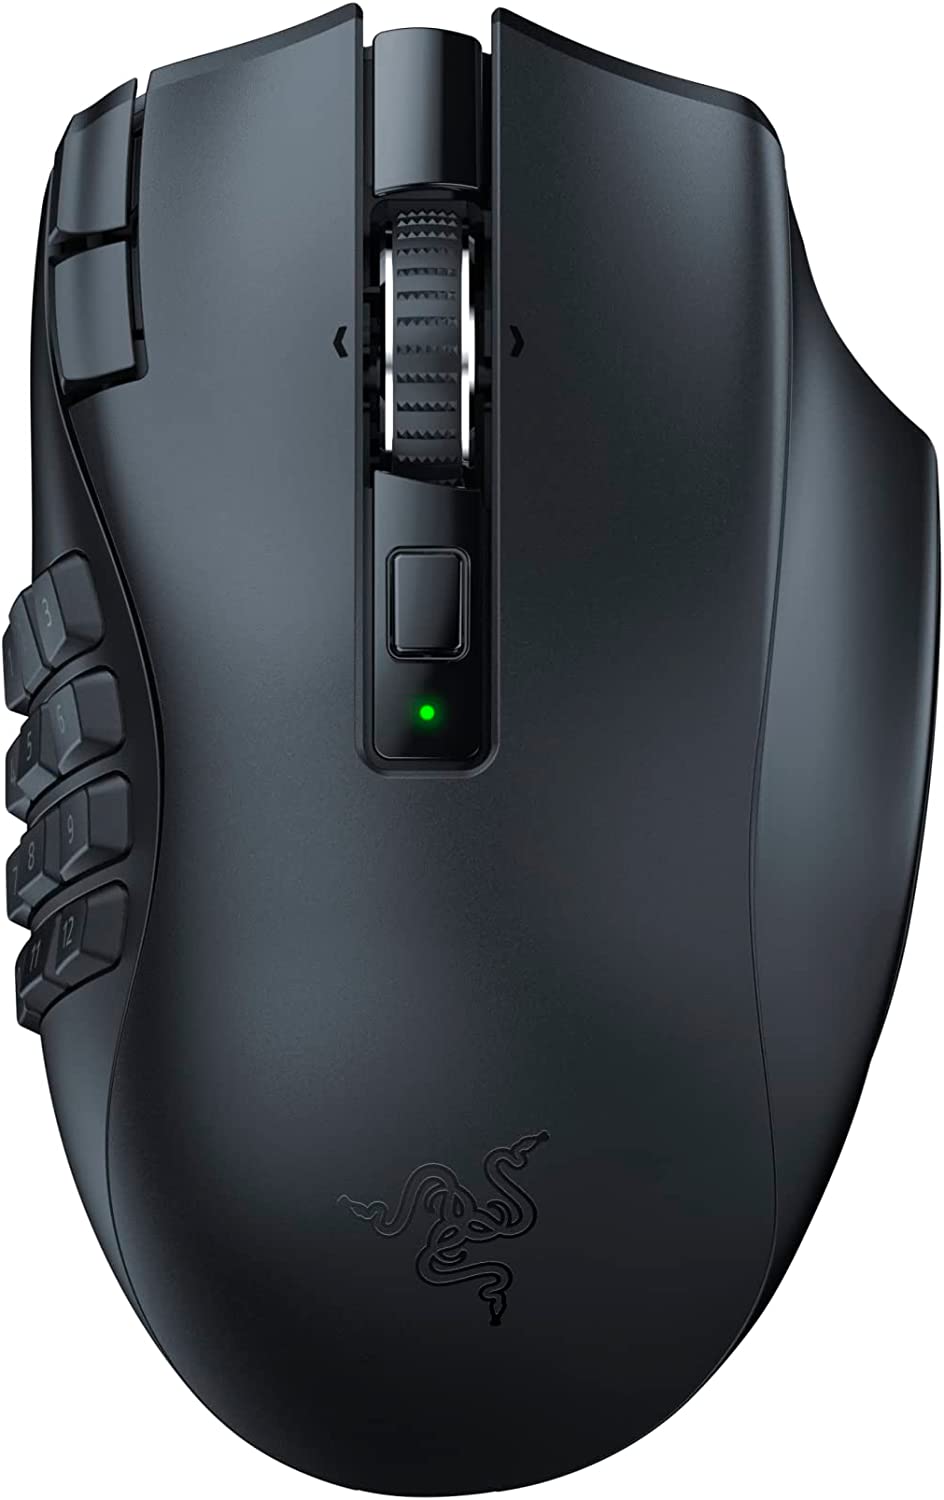 Buy Razer Naga V2 Gaming Mouse in Saudi - Blink.sa.com